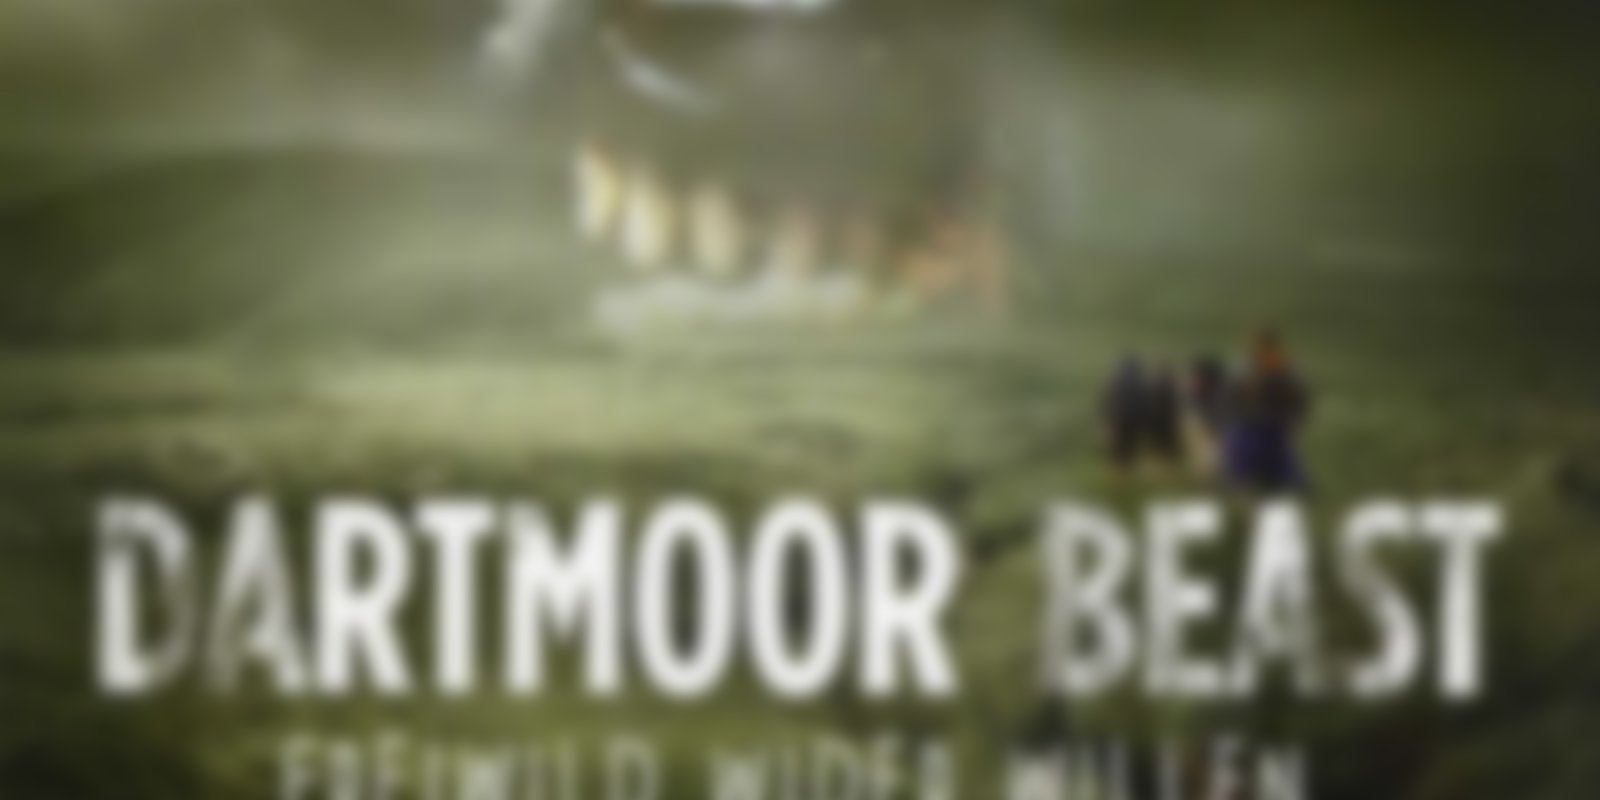 Dartmoor Beast